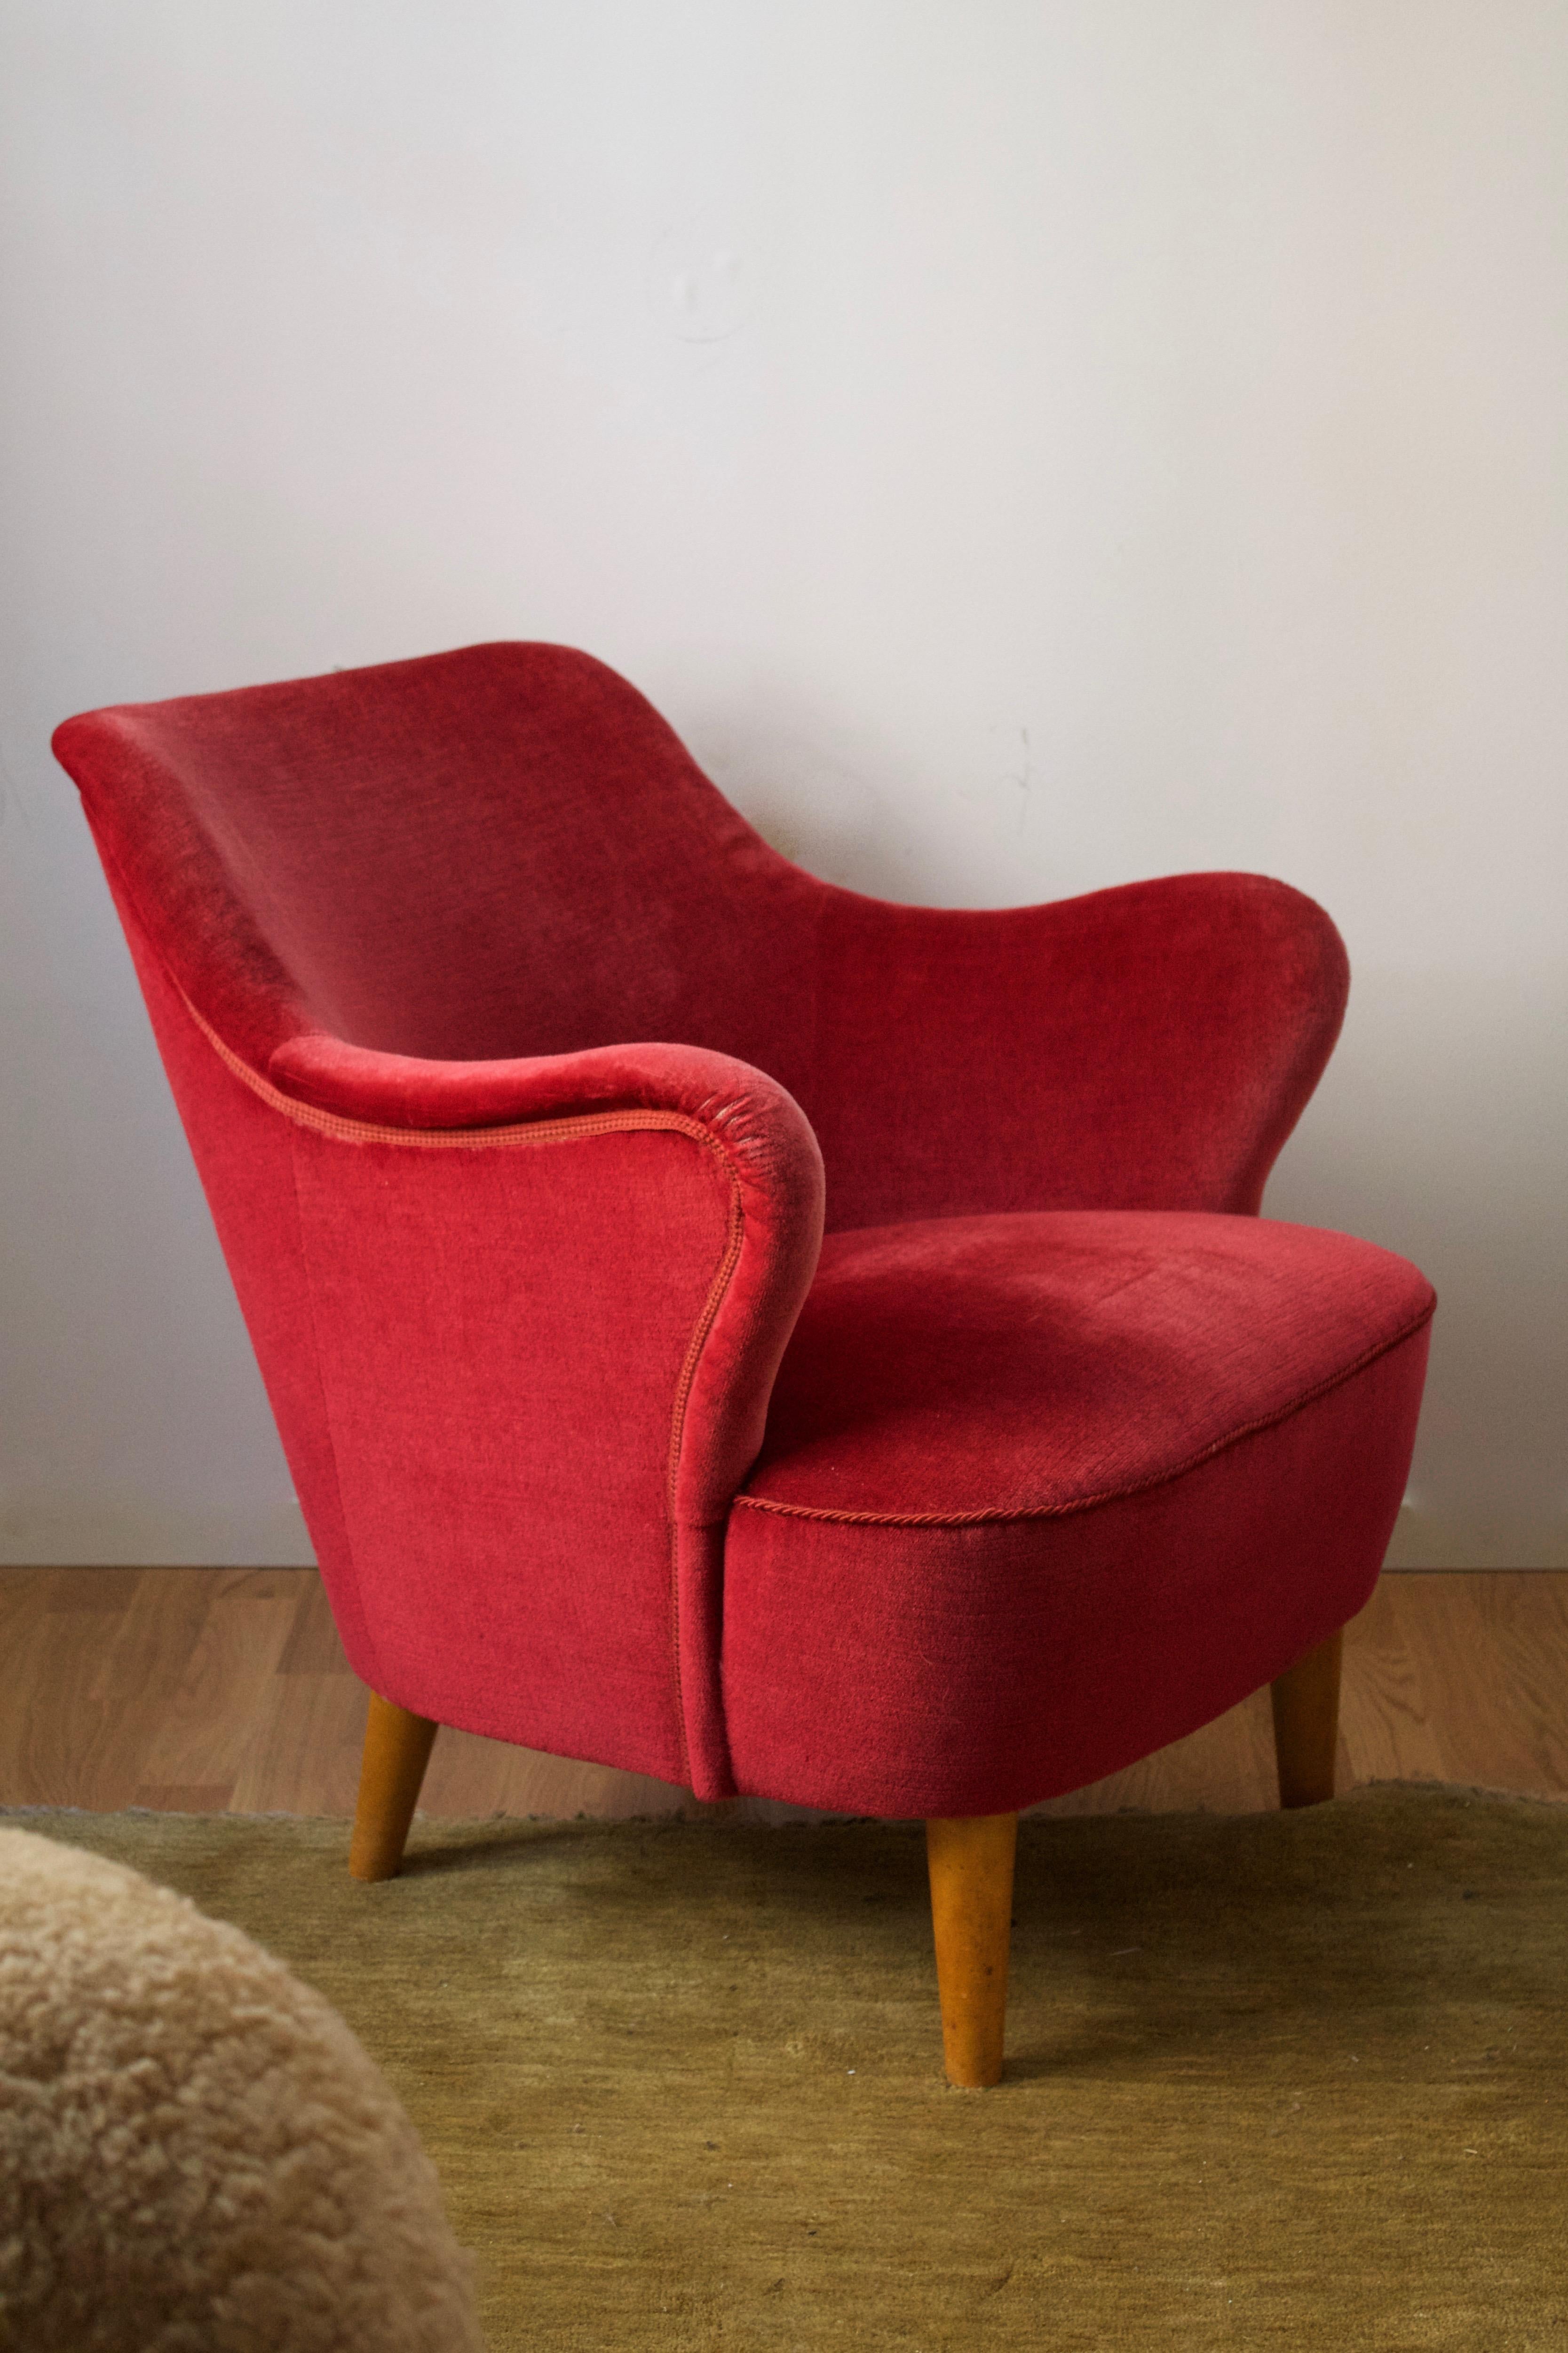 Mid-20th Century Swedish Designer, Organic Lounge Chair, Red Velvet, Light Wood, Sweden, 1940s